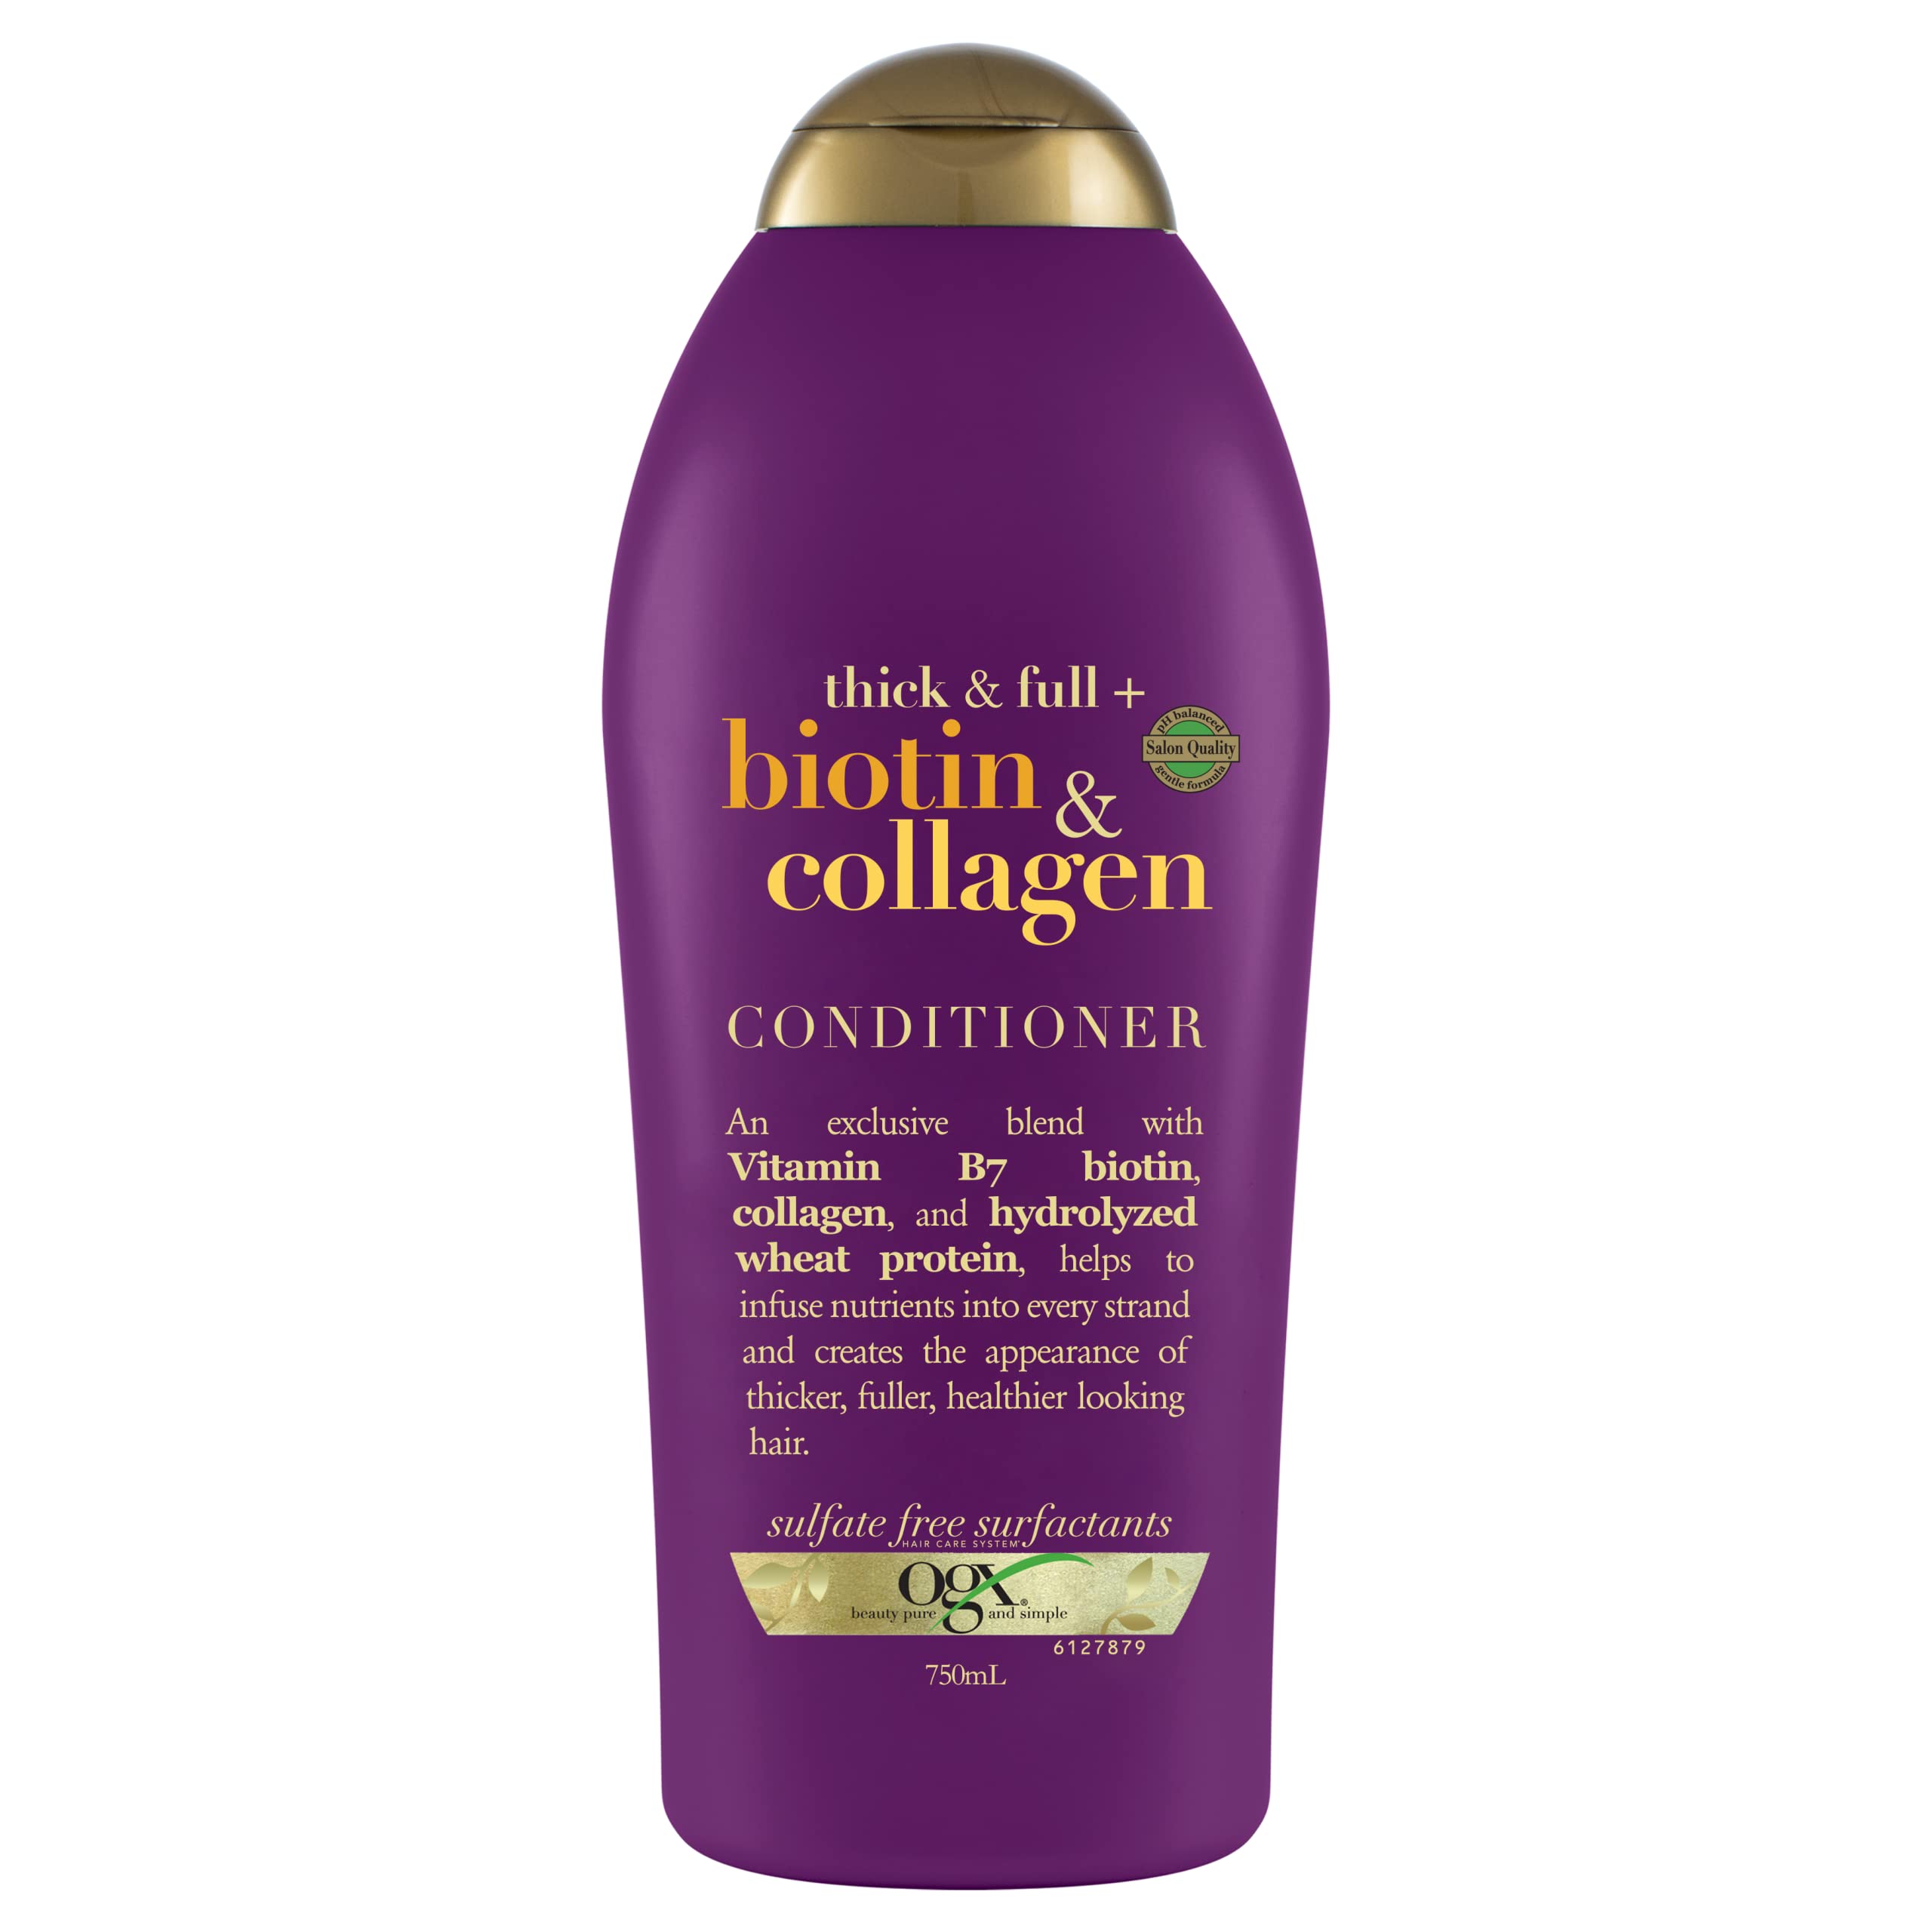 OGX Thick & Full + Biotin & Collagen Conditioner, Salon Size, 25.4 Fl Oz